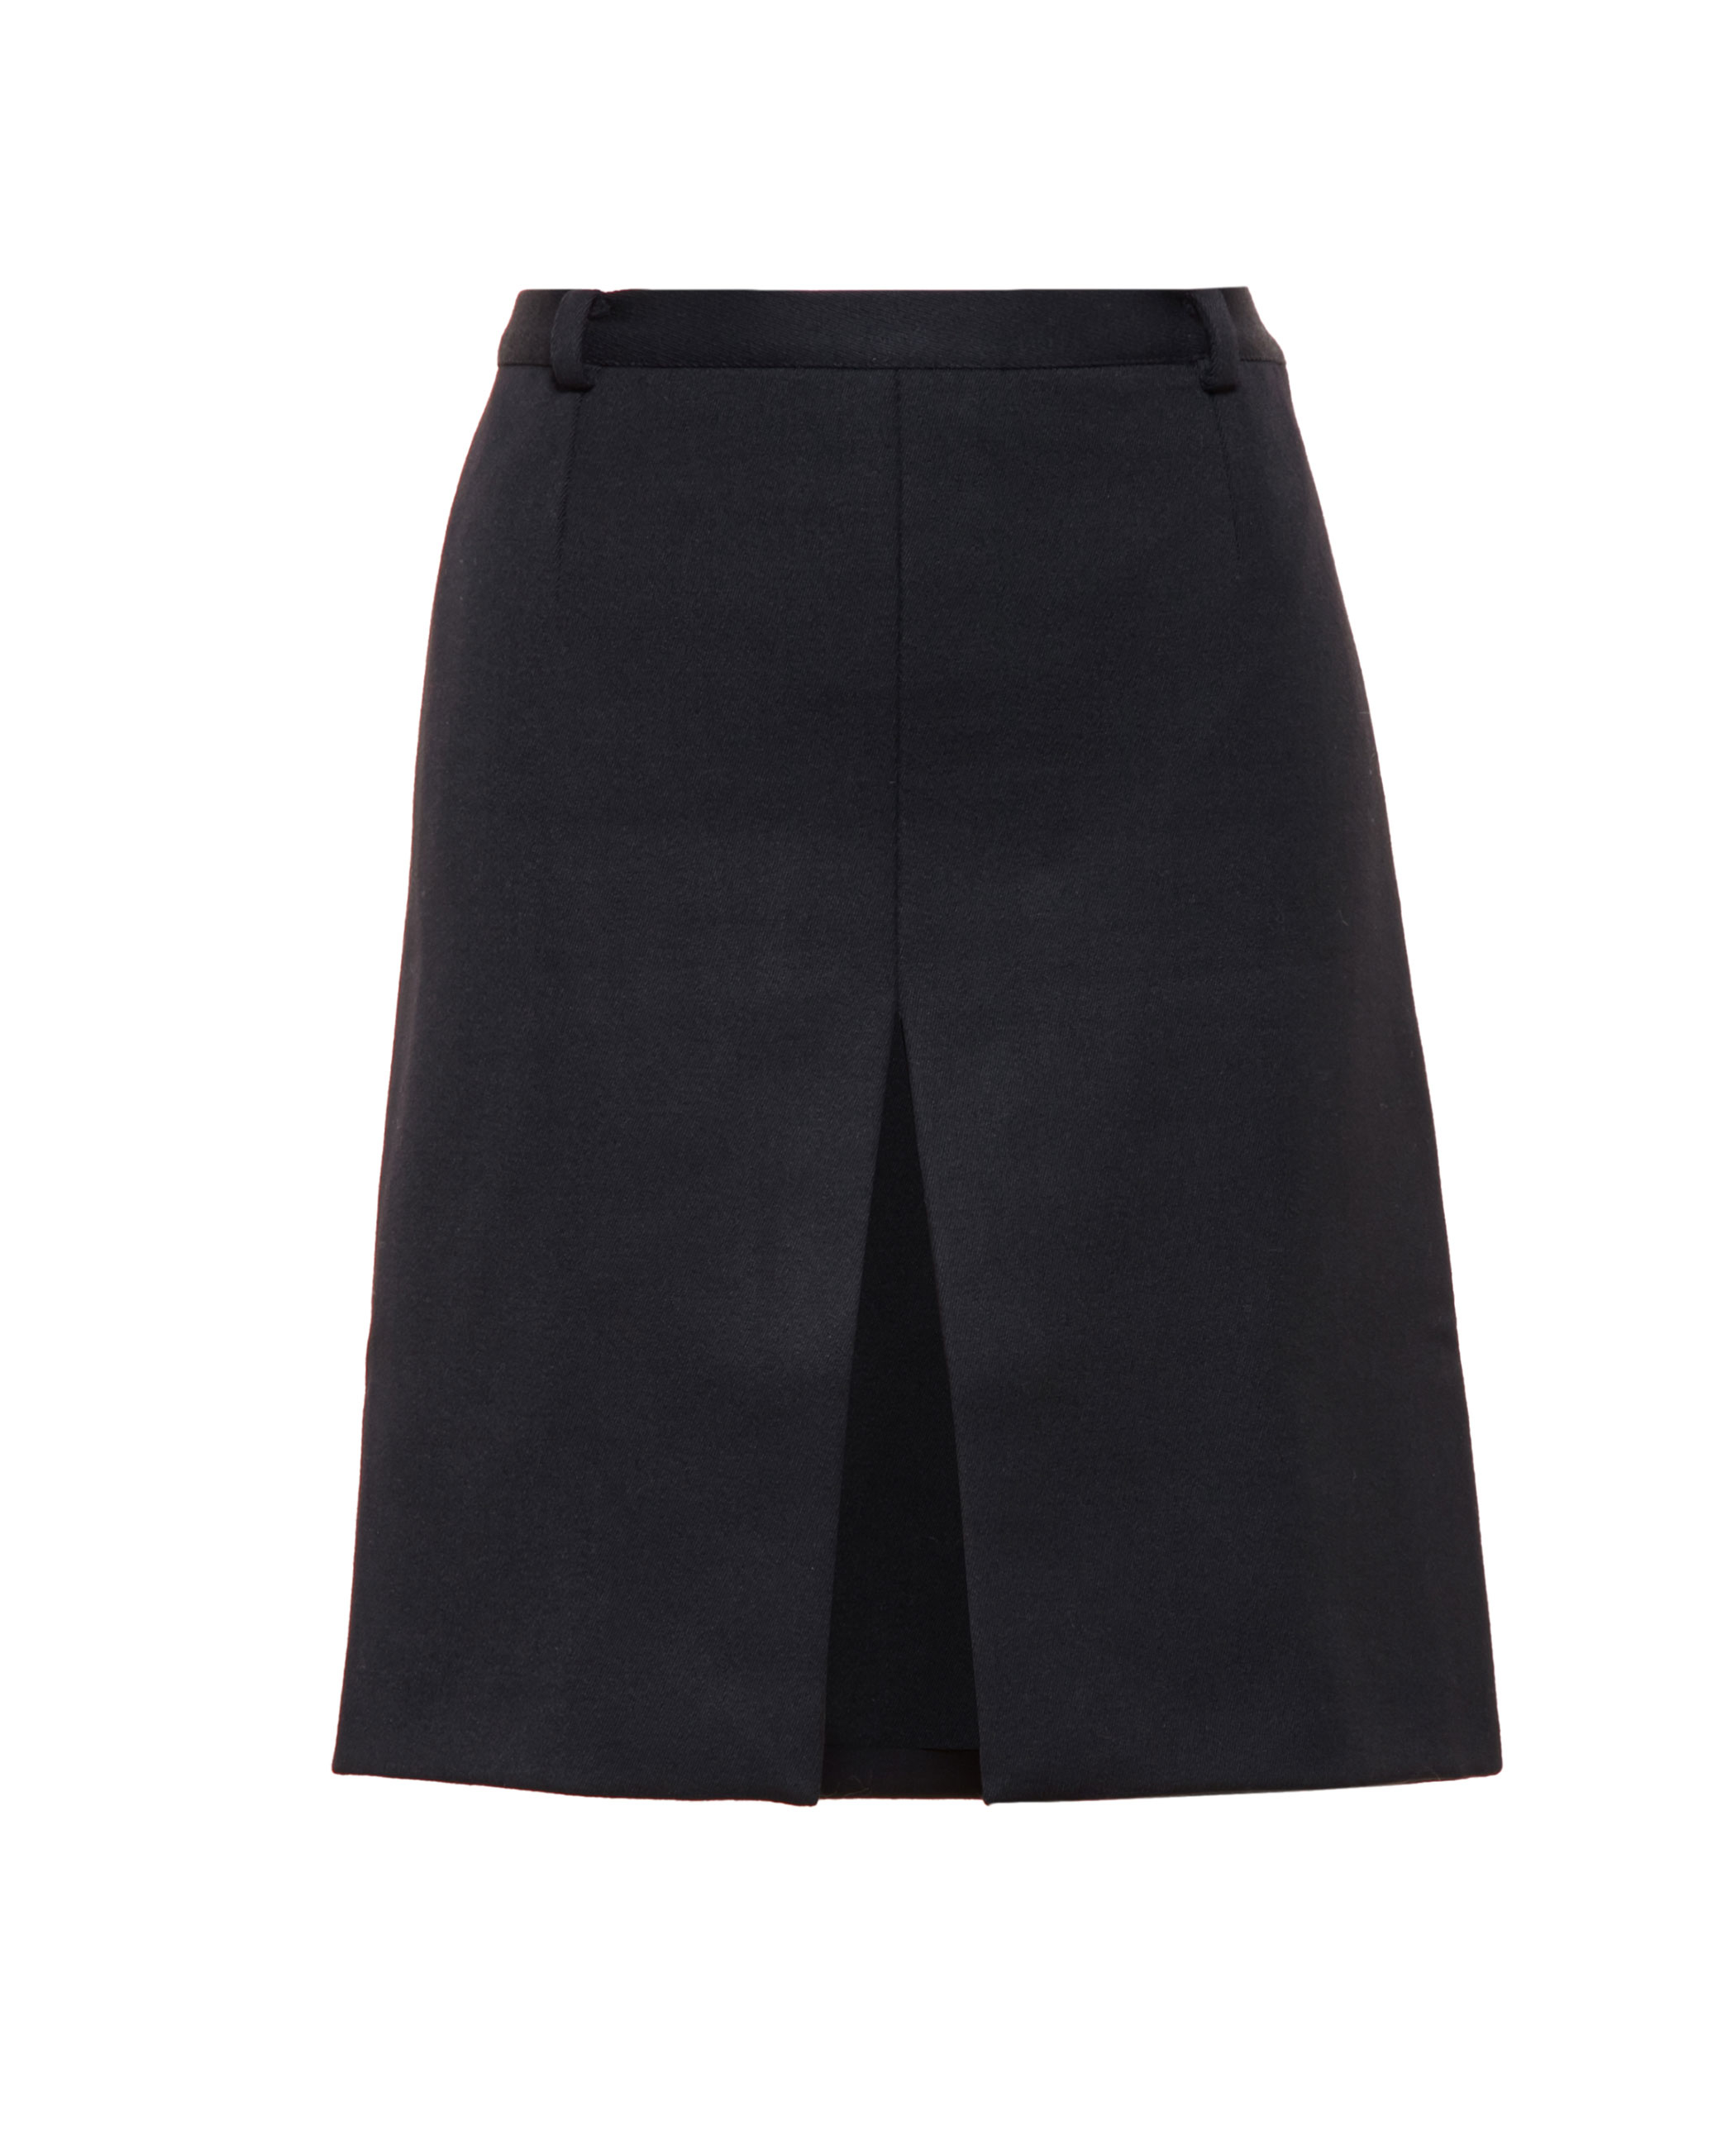 Vetements Front Slit Mini Skirt in Black | Lyst